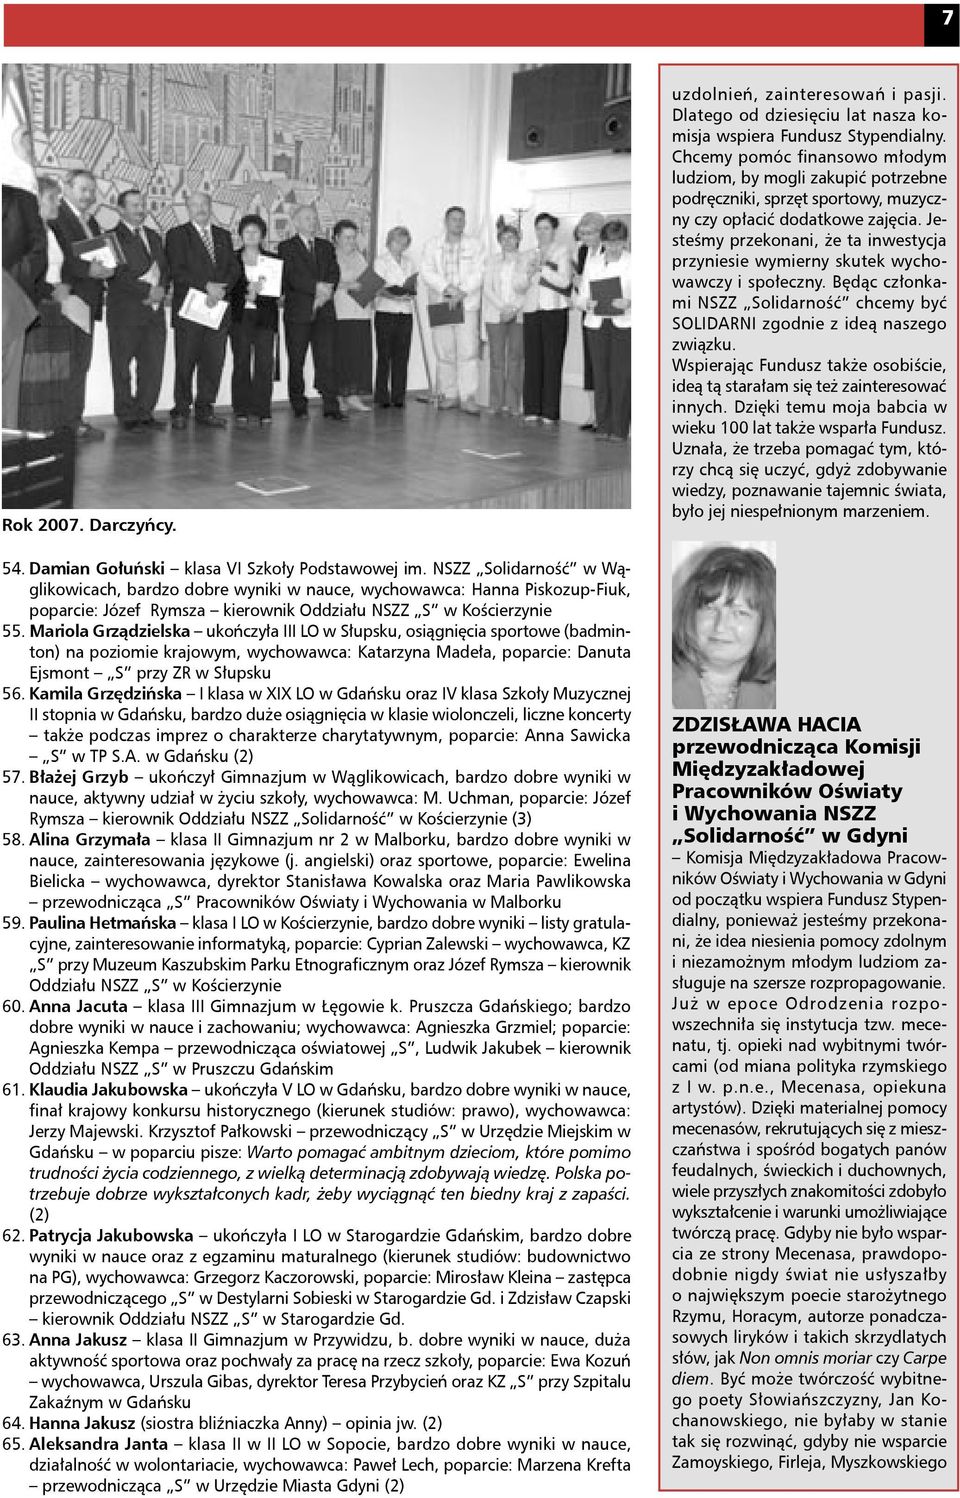 Mariola Grządzielska ukończyła III LO w Słupsku, osiągnięcia sportowe (badminton) na poziomie krajowym, wychowawca: Katarzyna Madeła, poparcie: Danuta Ejsmont S przy ZR w Słupsku 56.